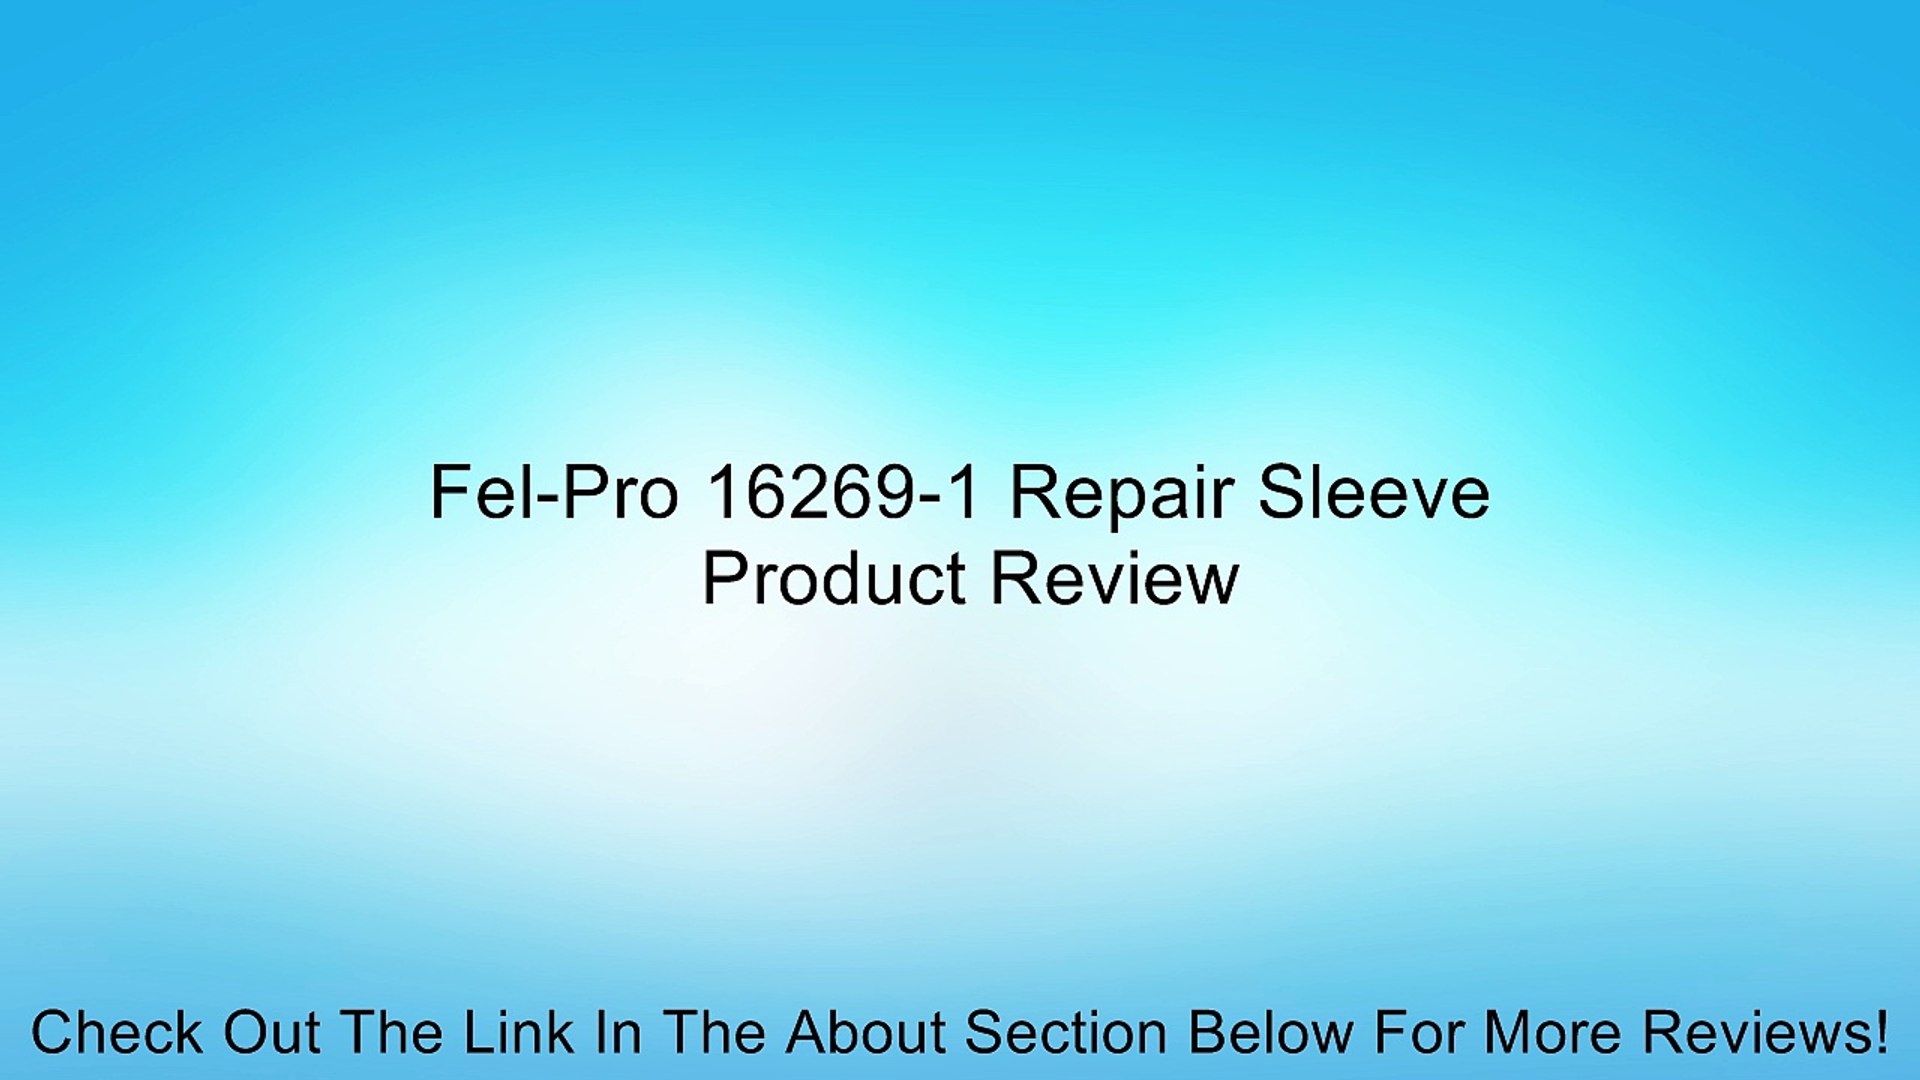 Fel-Pro 16269-1 Repair Sleeve